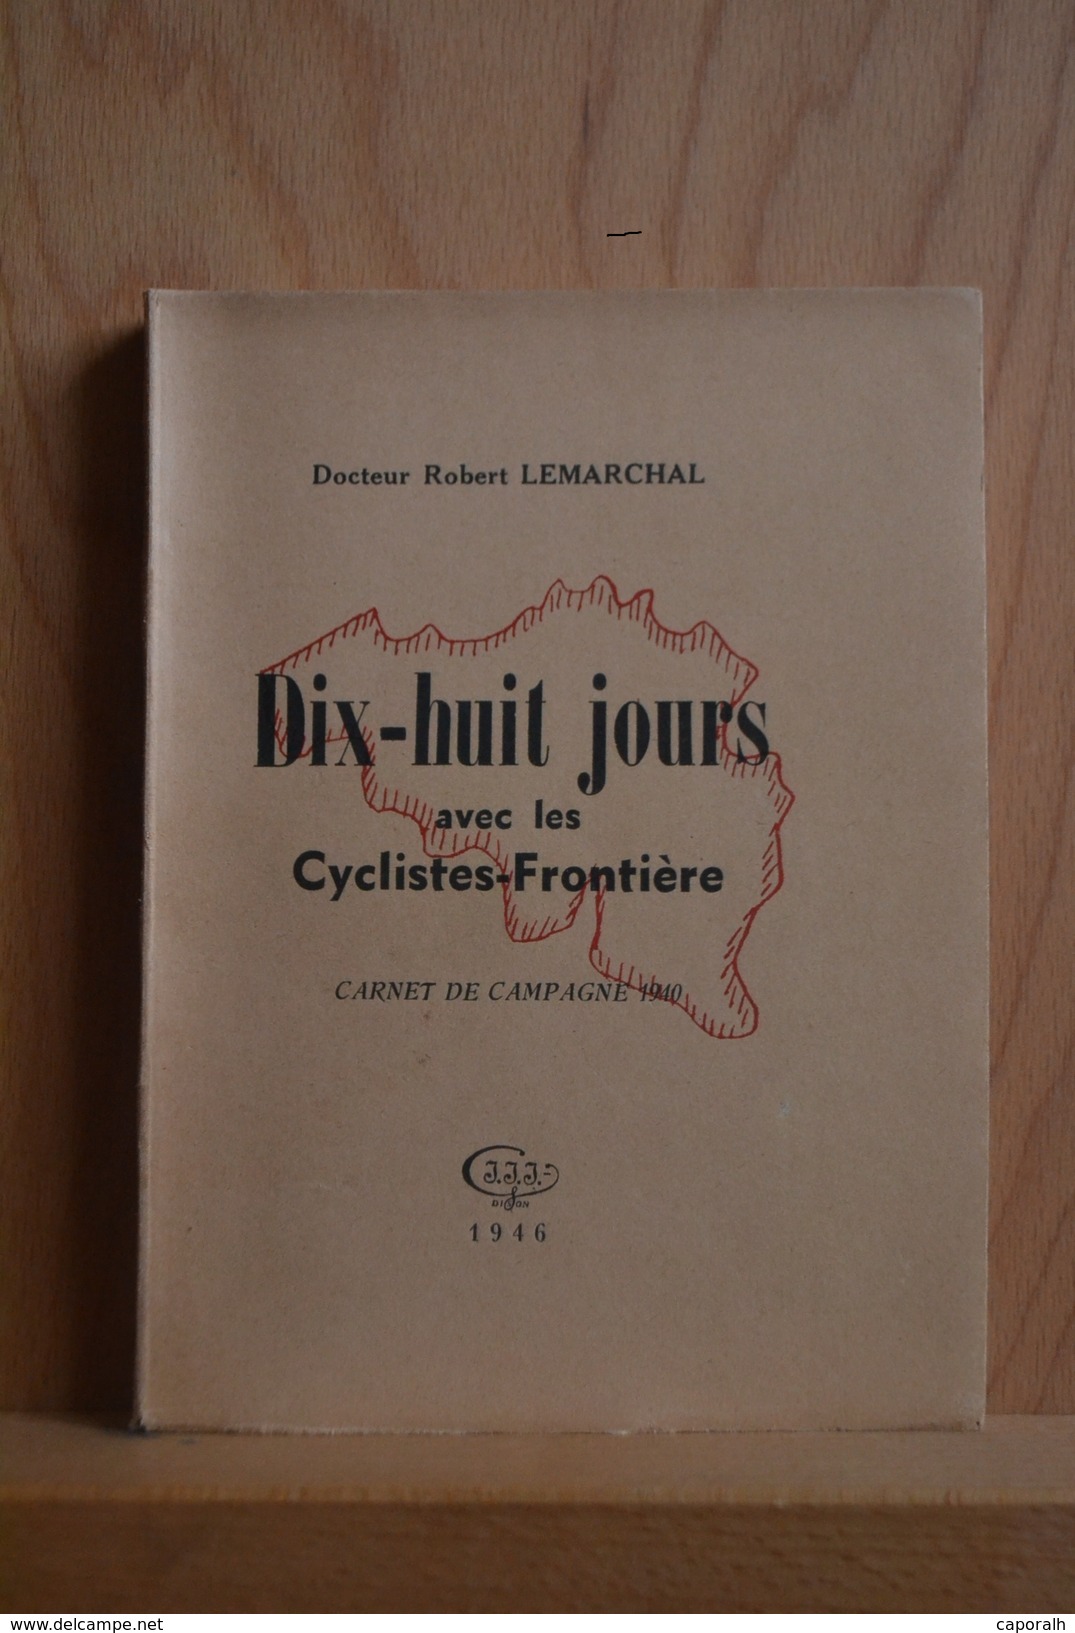 Armée Belge, Mai 1940. Dix-huit Jours Avec Les Cyclistes Frontière. Carnet De Campagne ; Dct. R. Lemarchal. Edit.1946 - Français